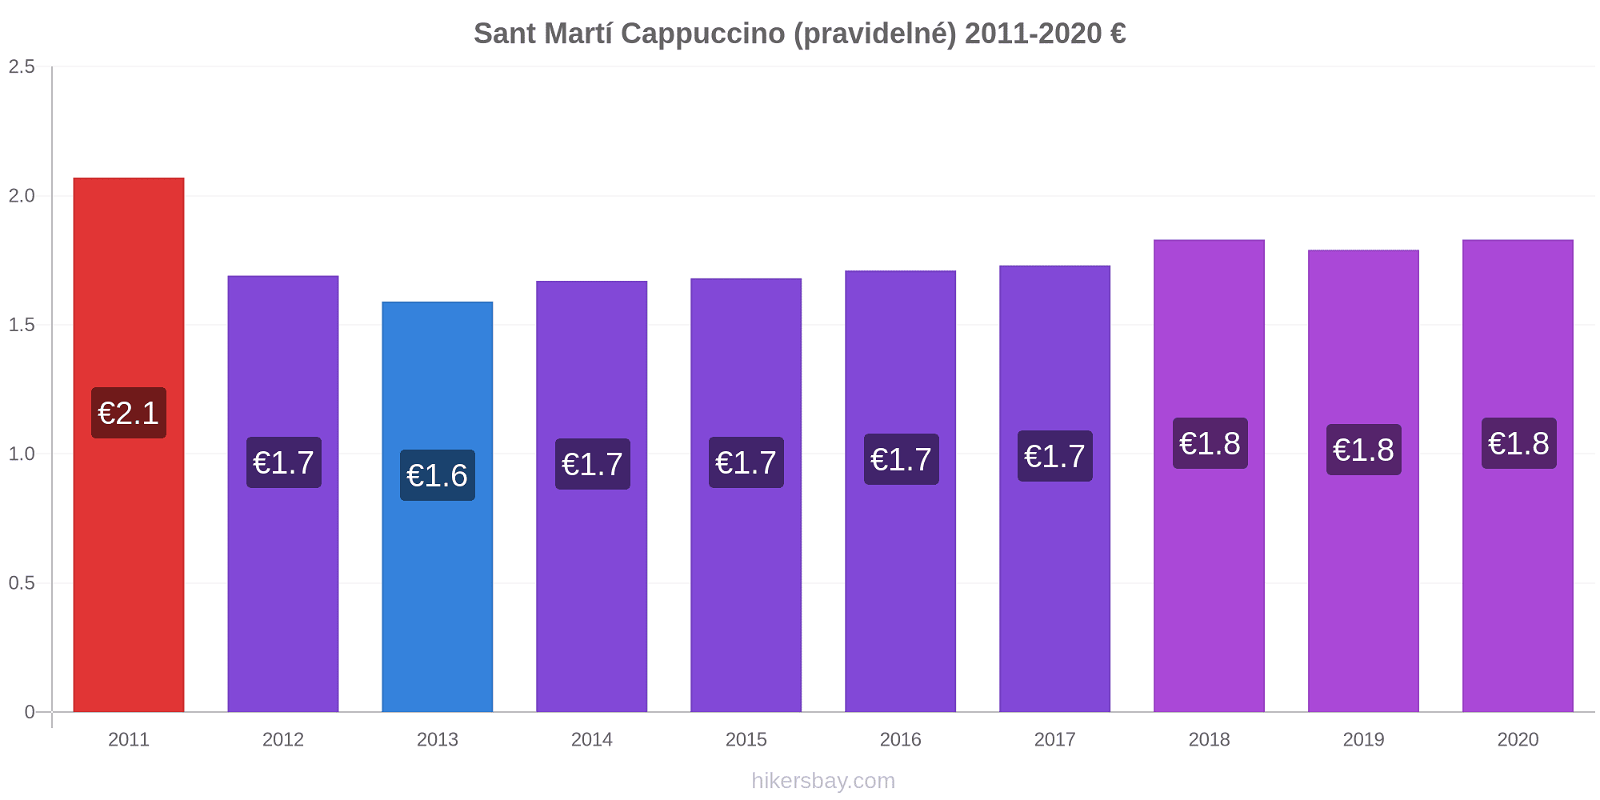 Sant Martí změny cen Cappuccino (pravidelné) hikersbay.com